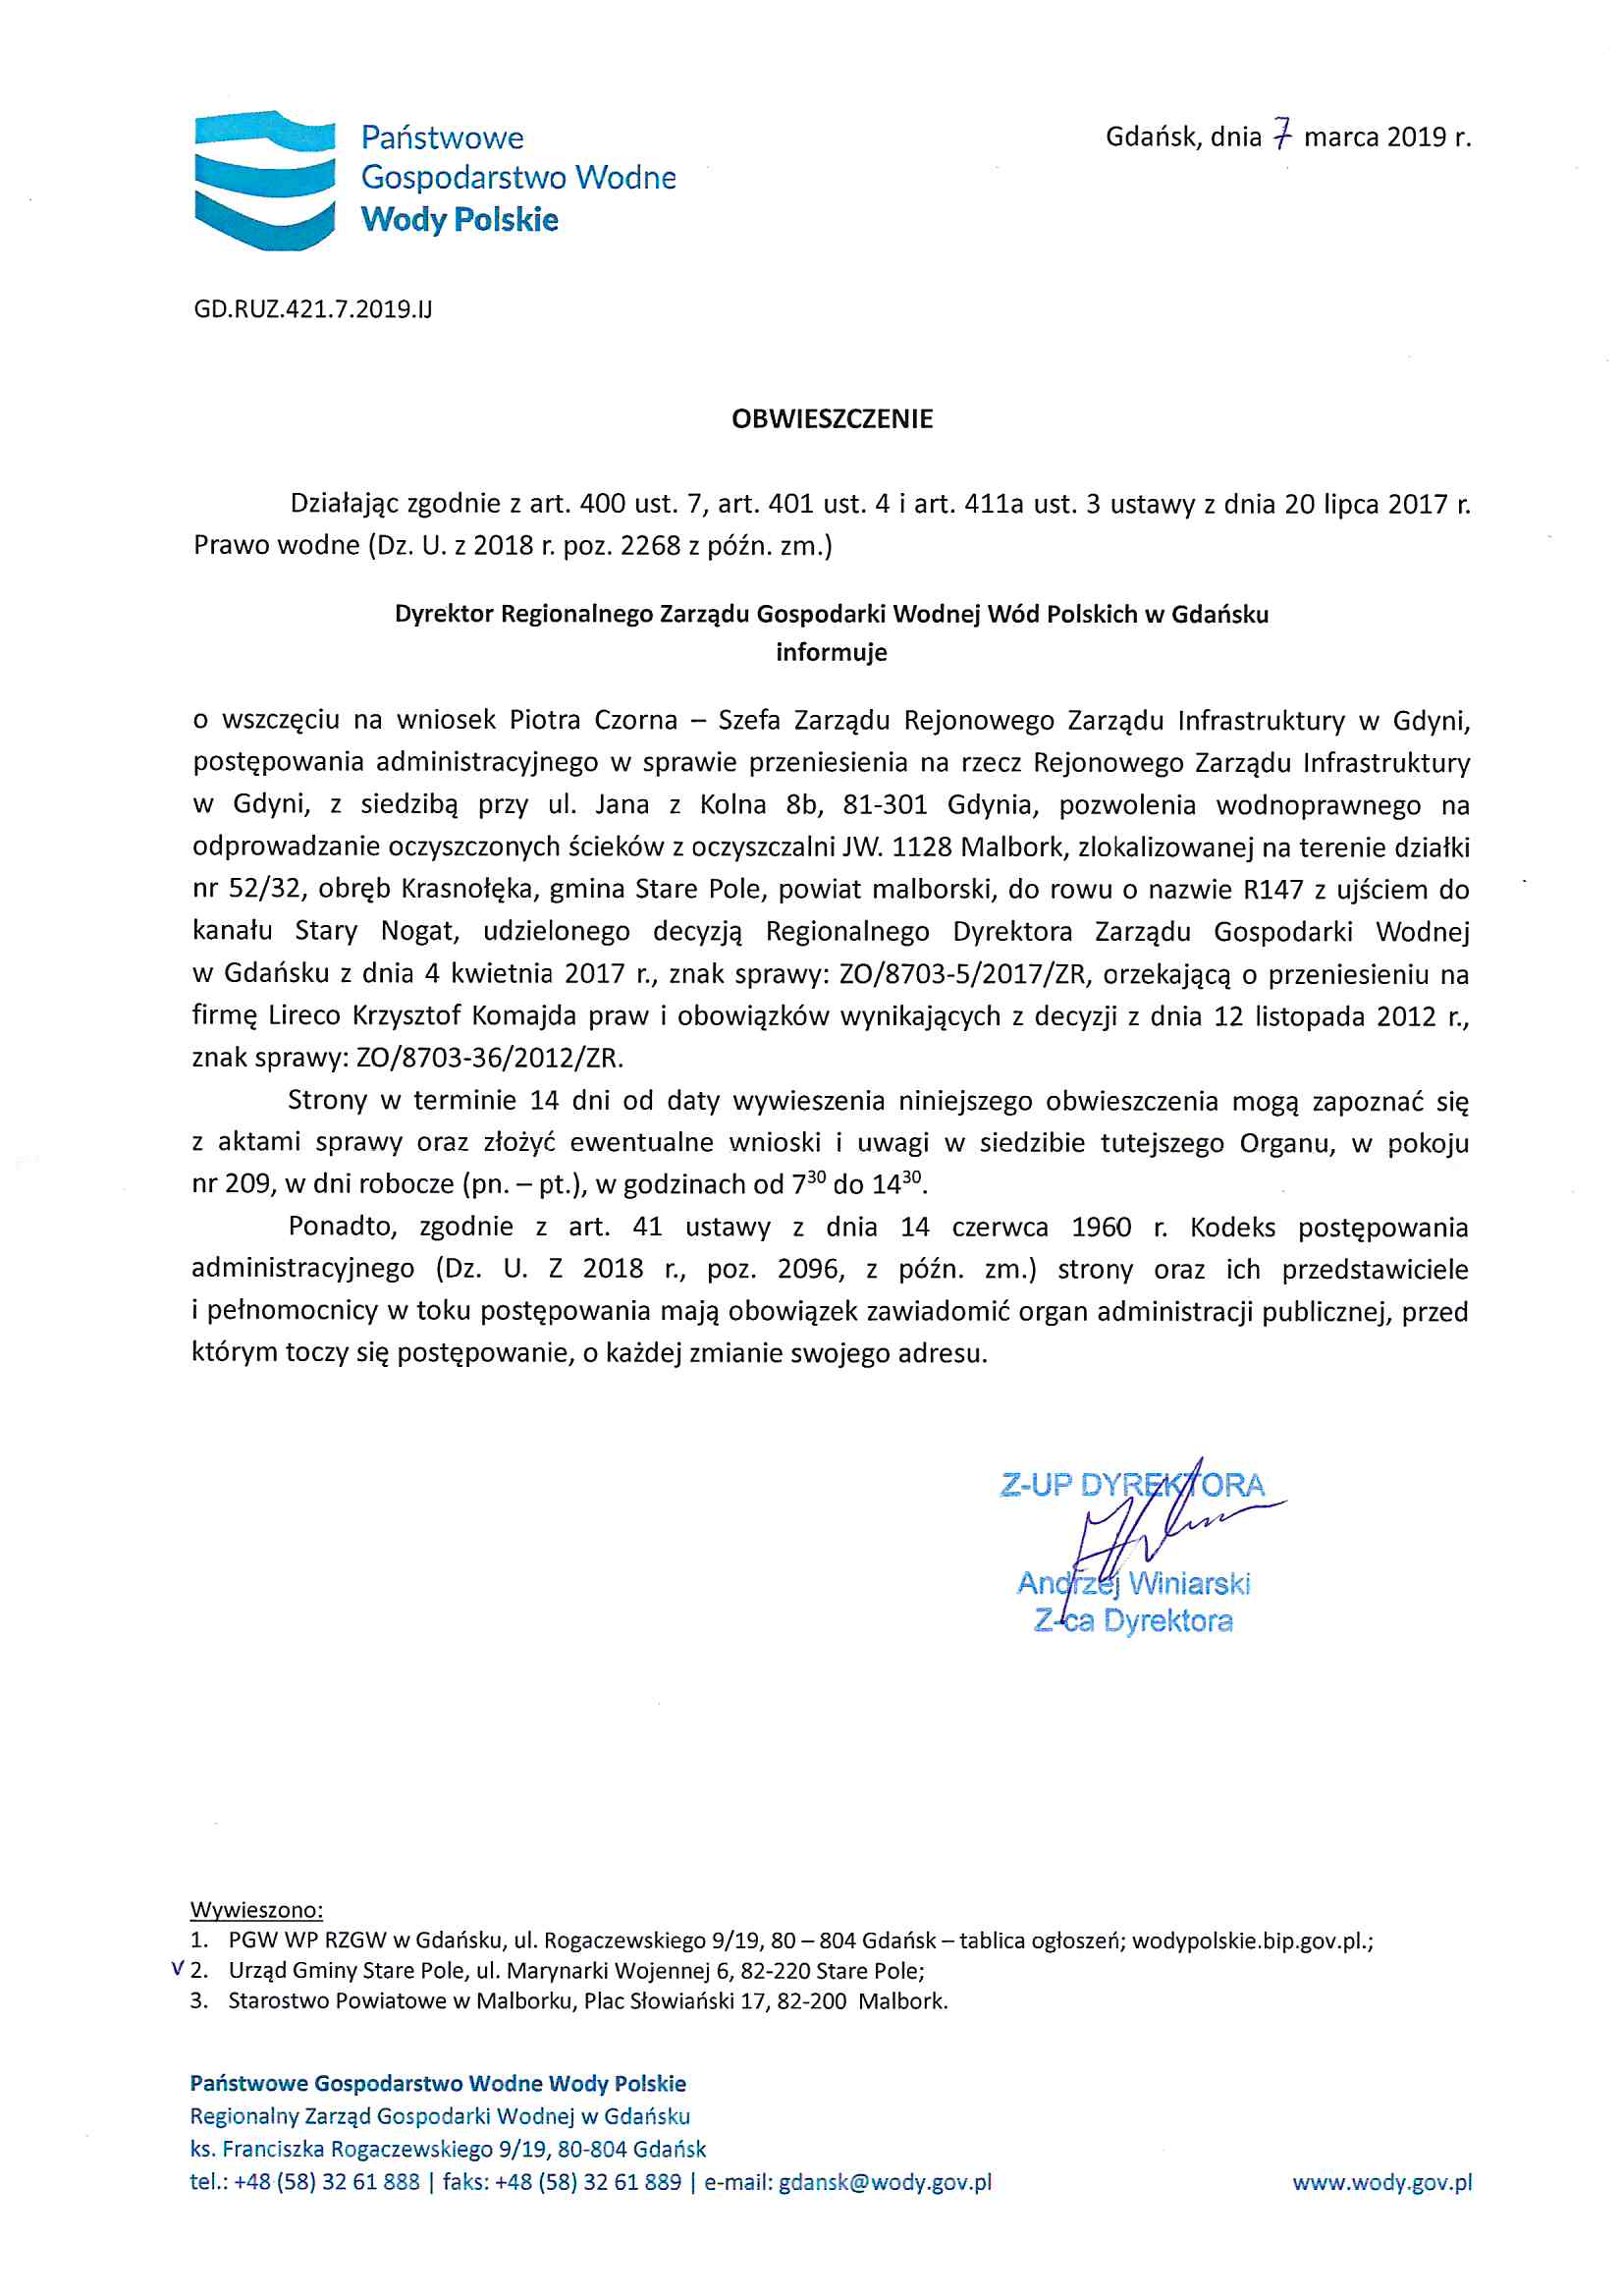 Obwieszczenie Dyrektora PGW z dnia 7 marca 2019 r. - I